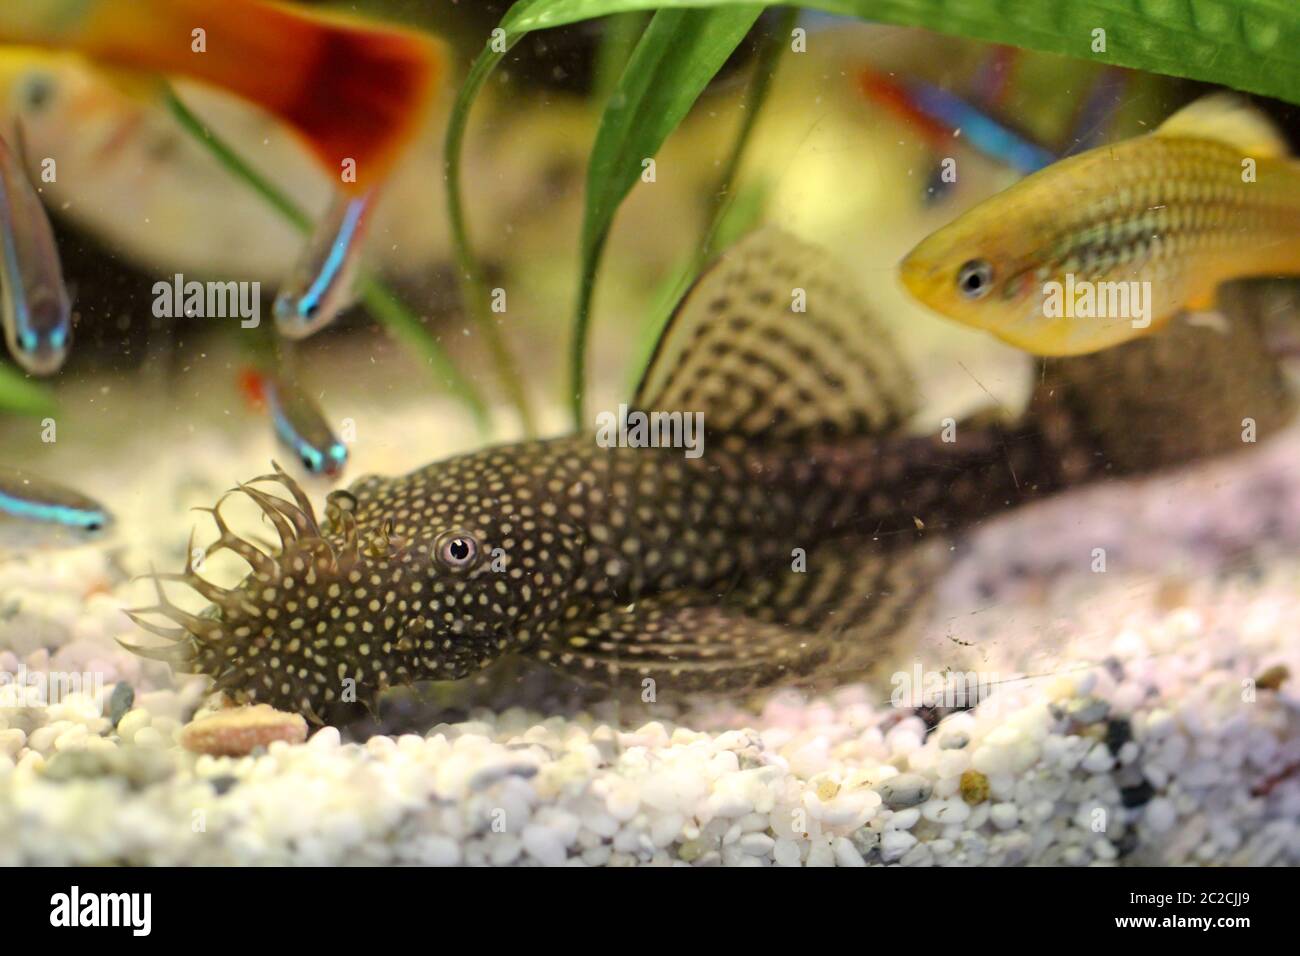 Detail of a catfish, fish in aquarium Stock Photo